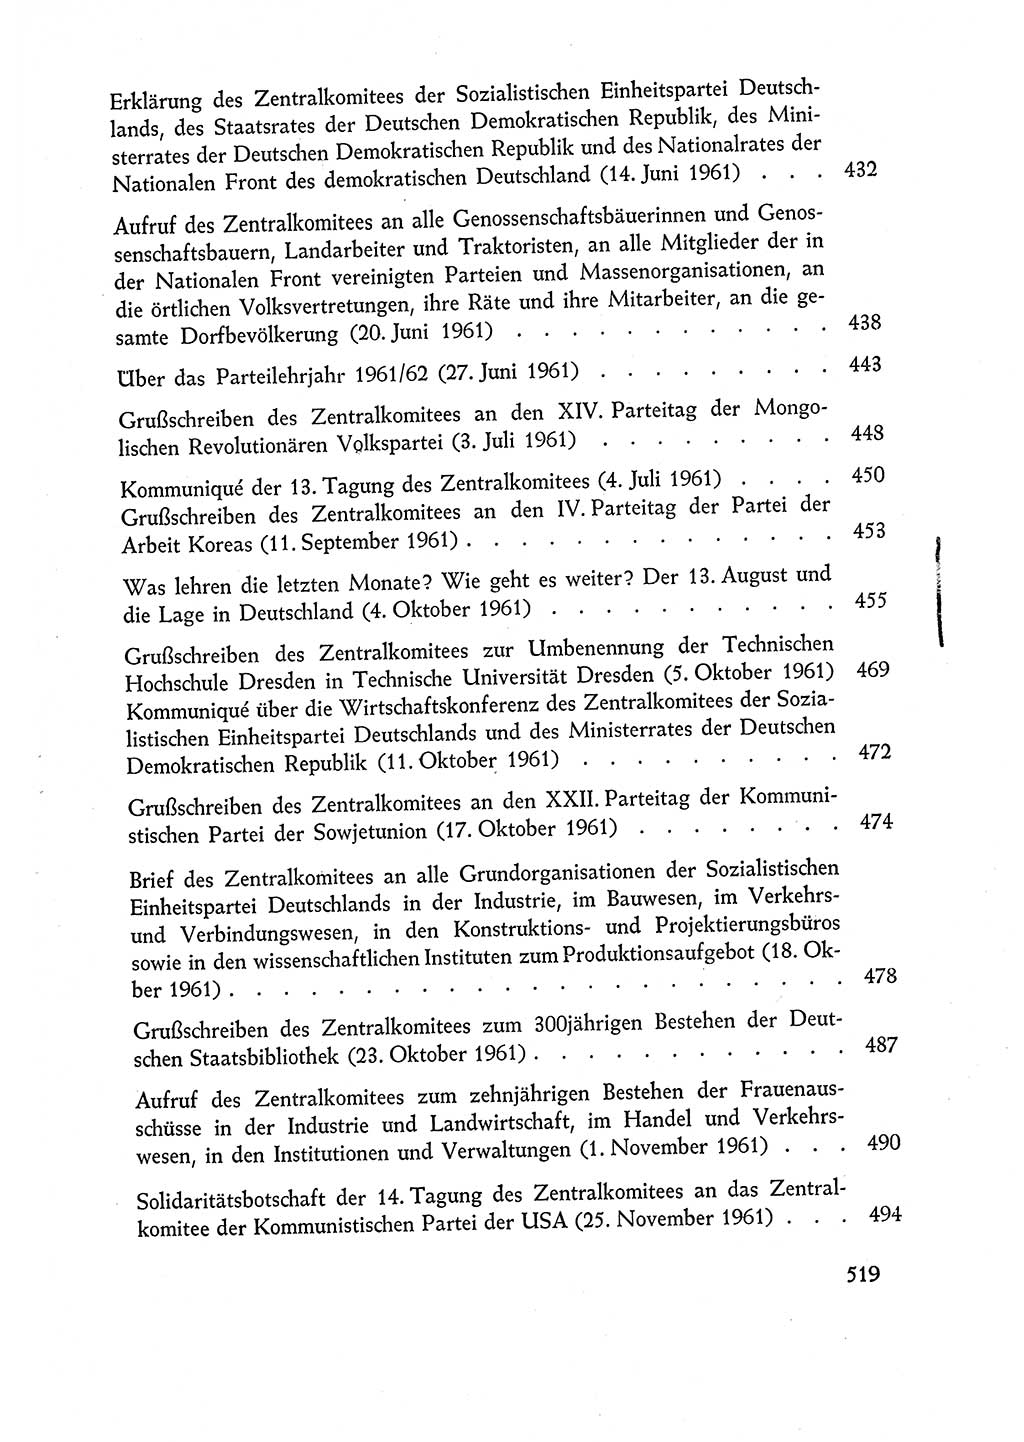 Dokumente der Sozialistischen Einheitspartei Deutschlands (SED) [Deutsche Demokratische Republik (DDR)] 1960-1961, Seite 519 (Dok. SED DDR 1960-1961, S. 519)